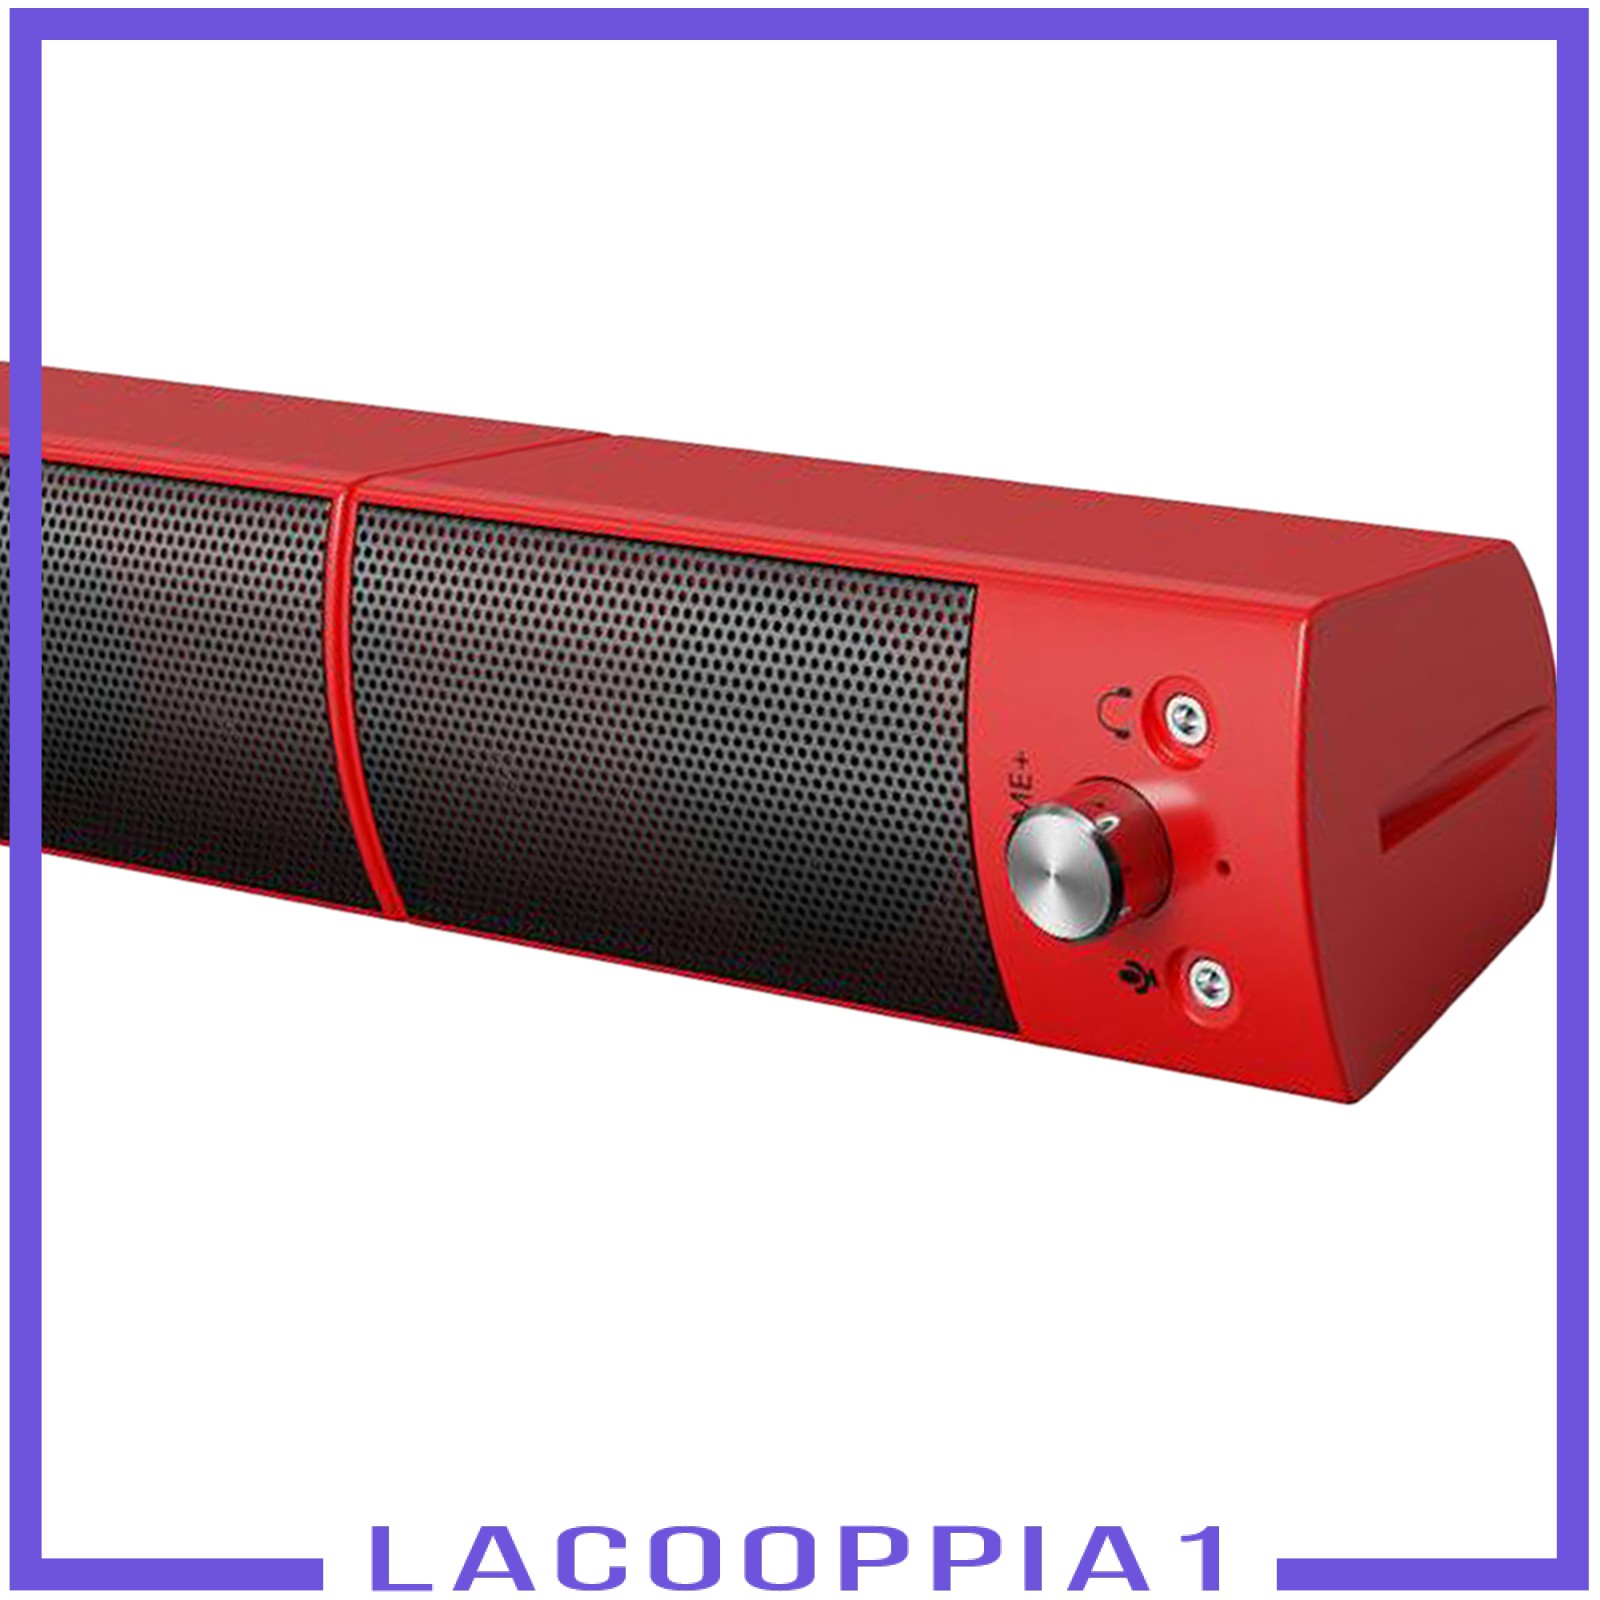 Loa Bluetooth Lapopopia1 Âm Thanh Siêu Trầm Và Phụ Kiện